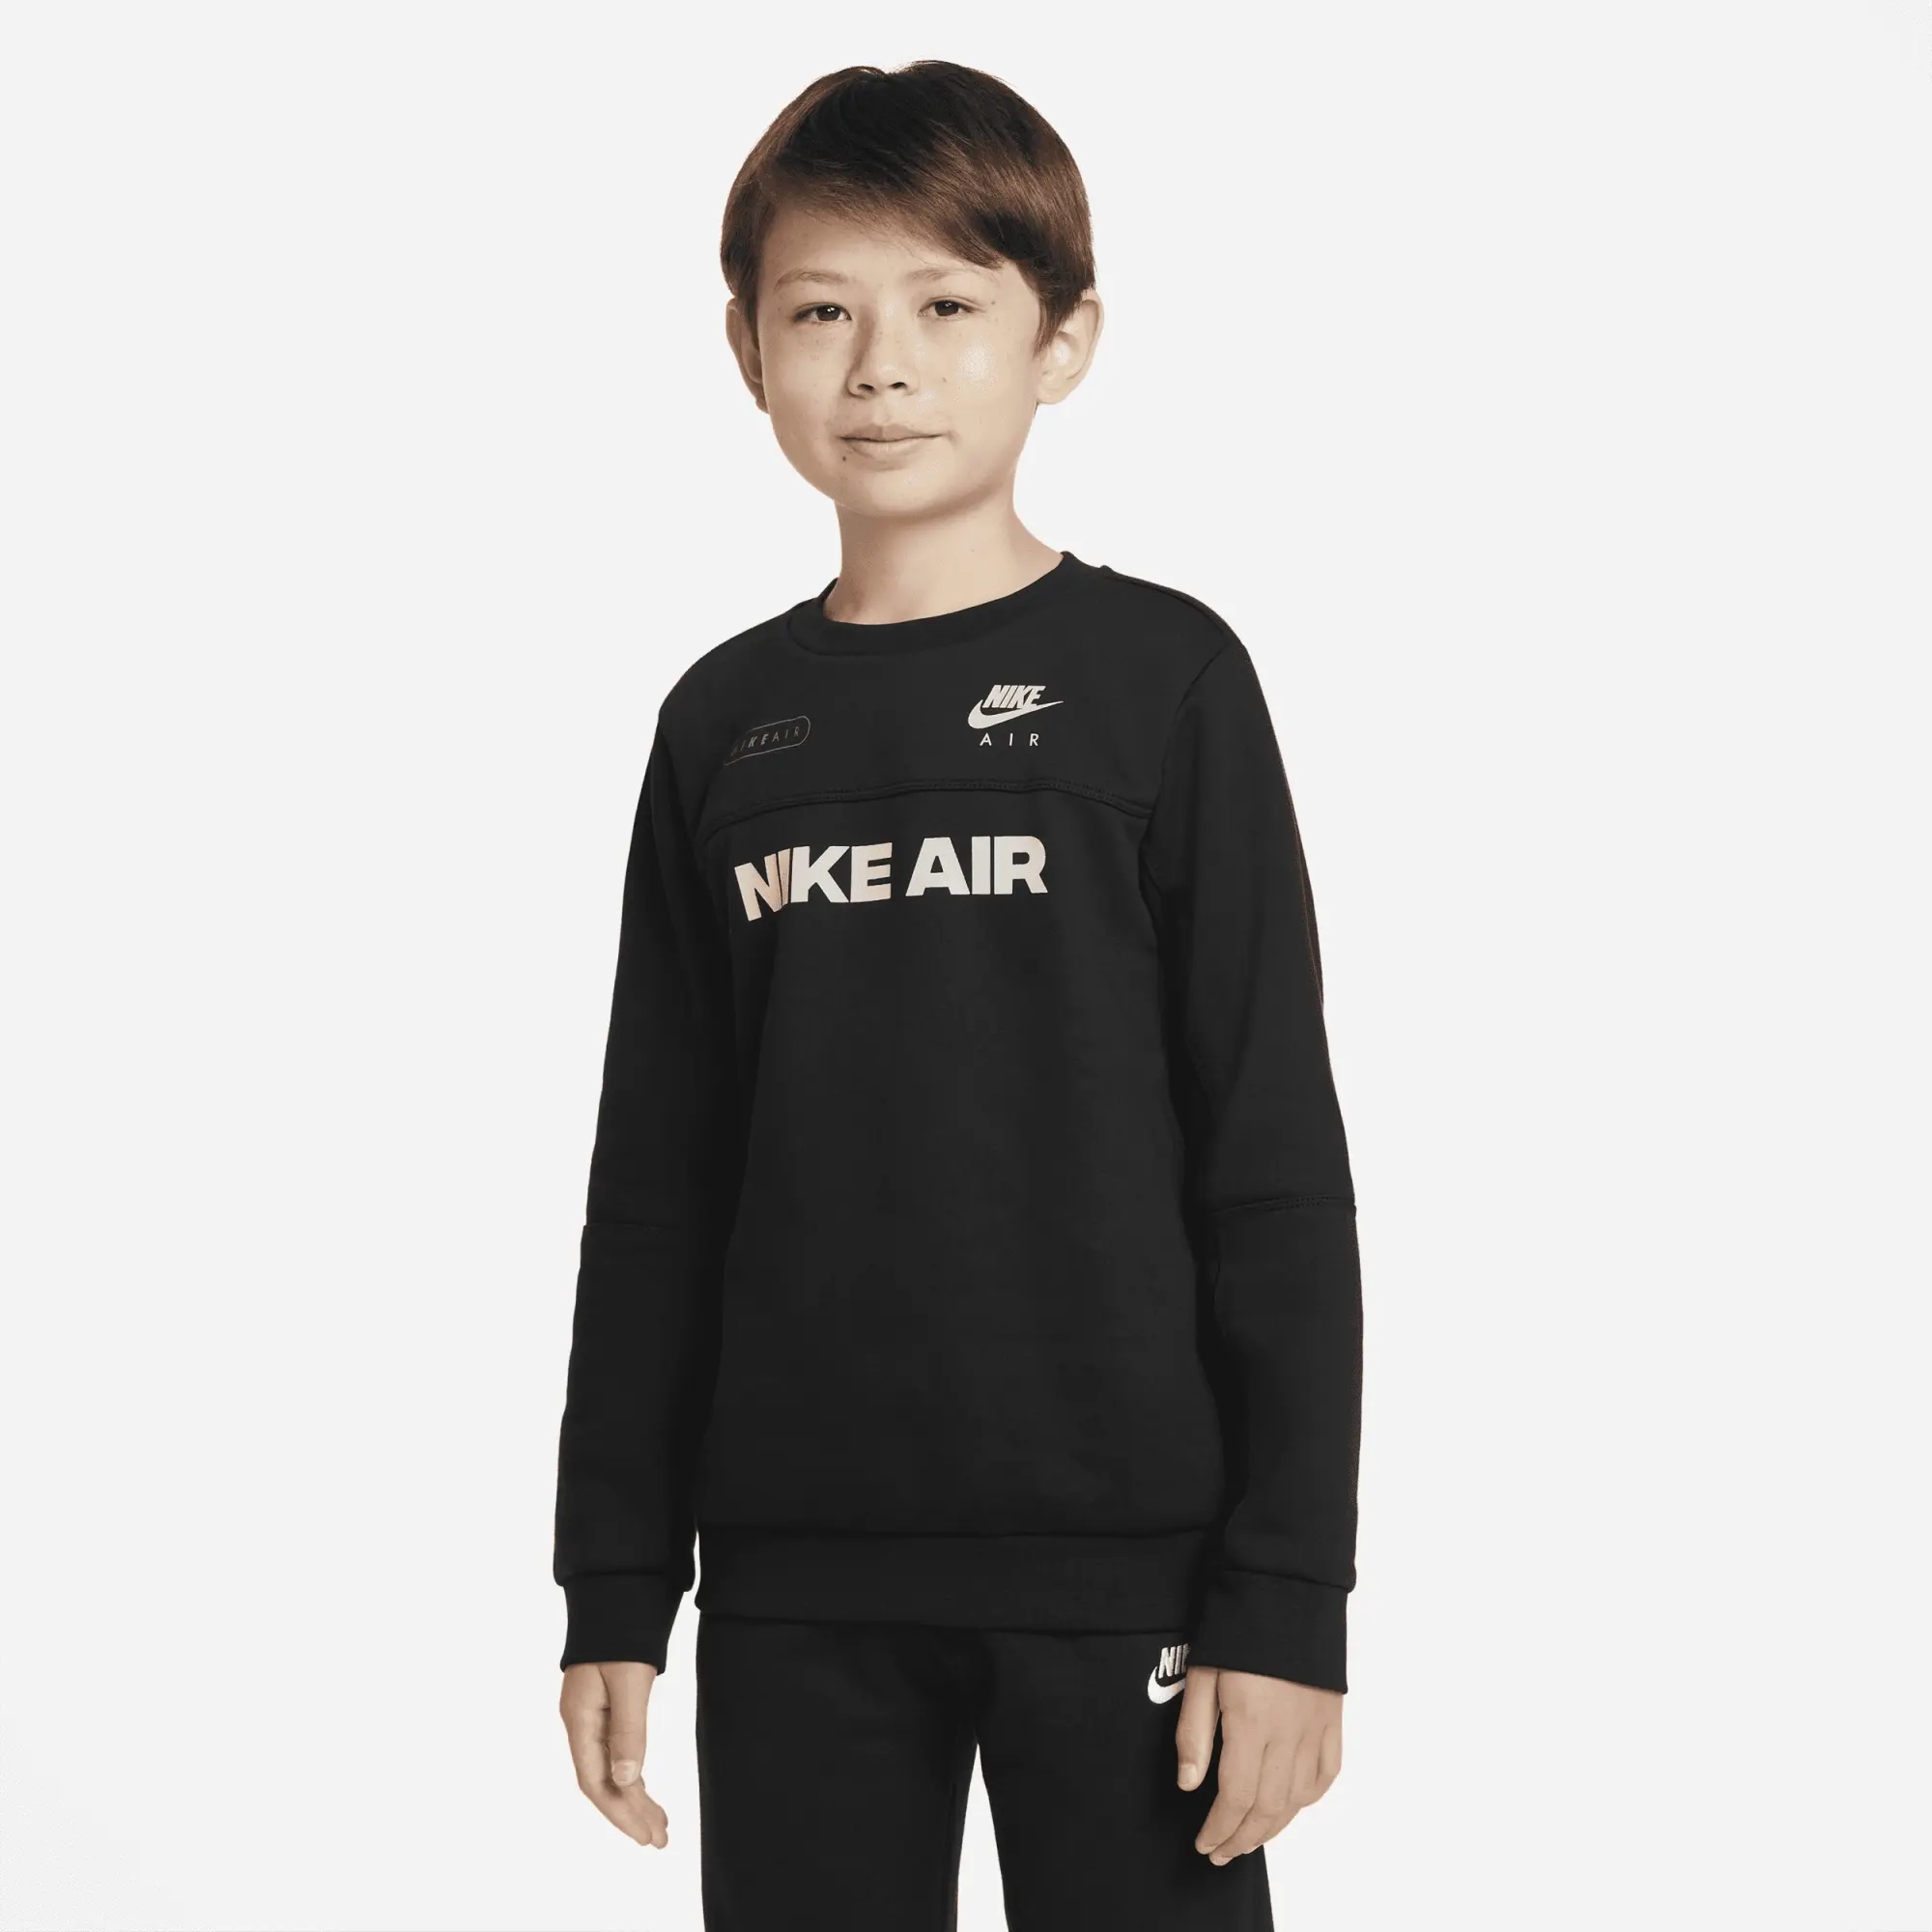 Nike Air Older Kids' (Boys') Crew Sweatshirt - Black